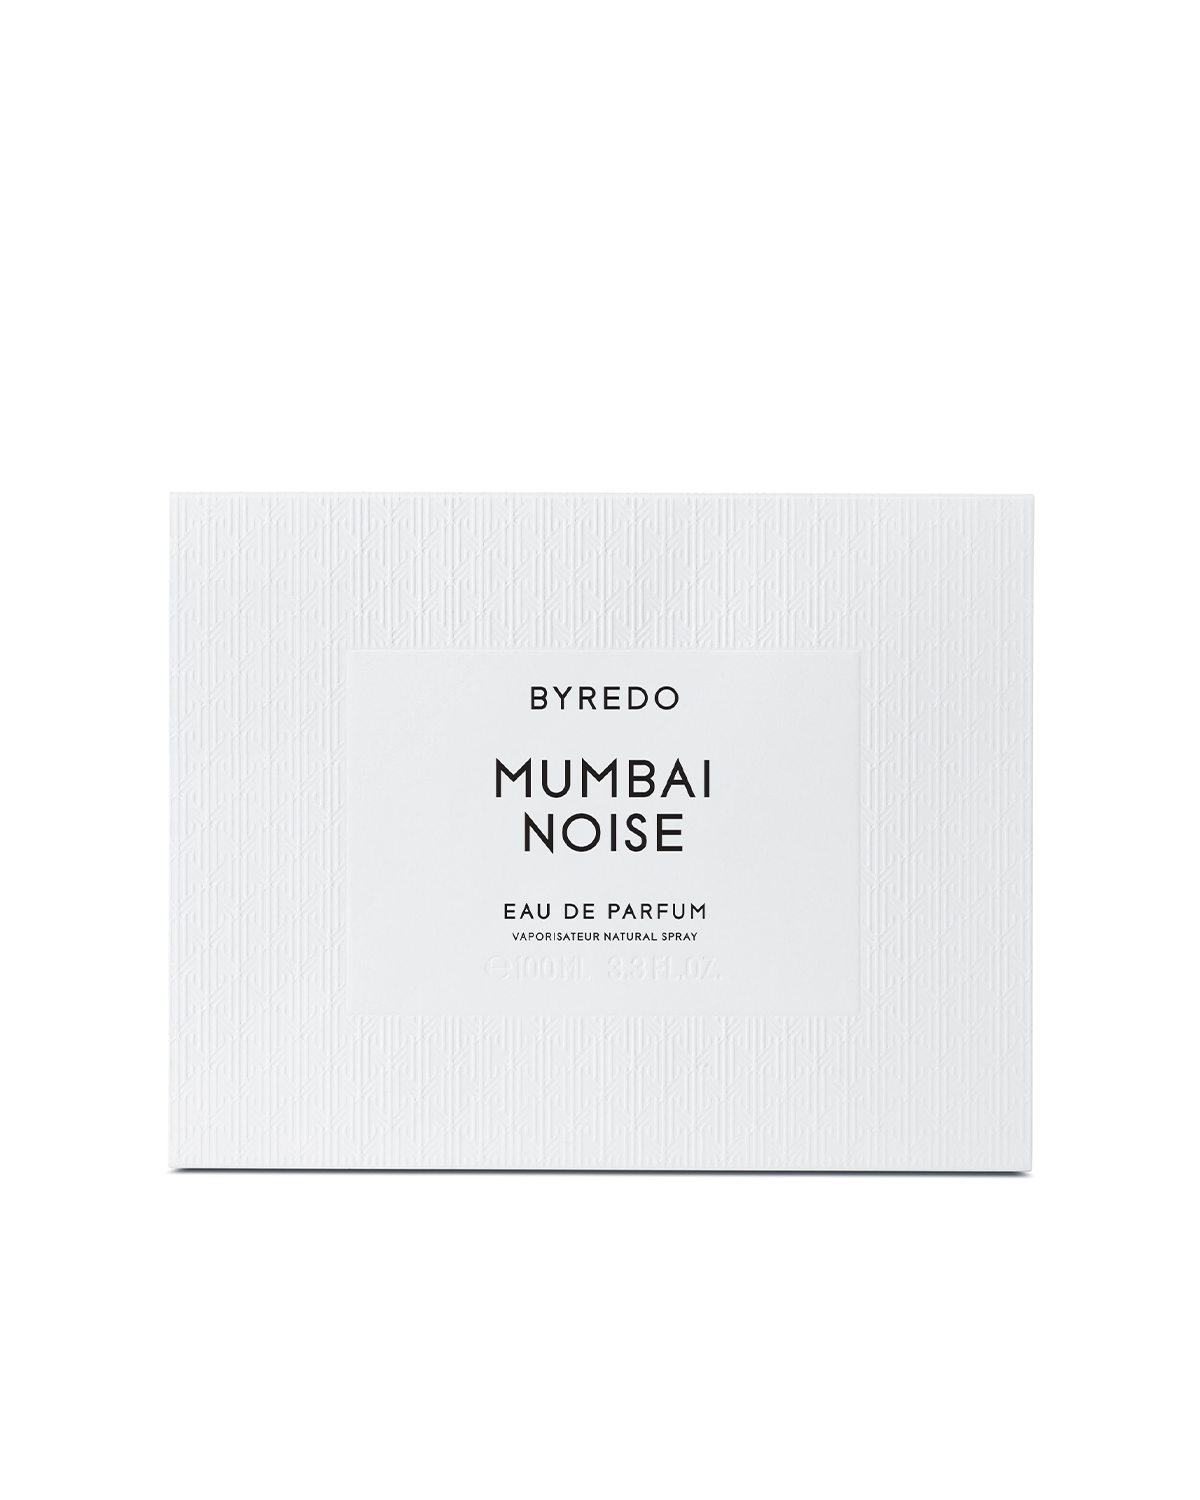 Mumbai Noise 100ml Eau de Parfum